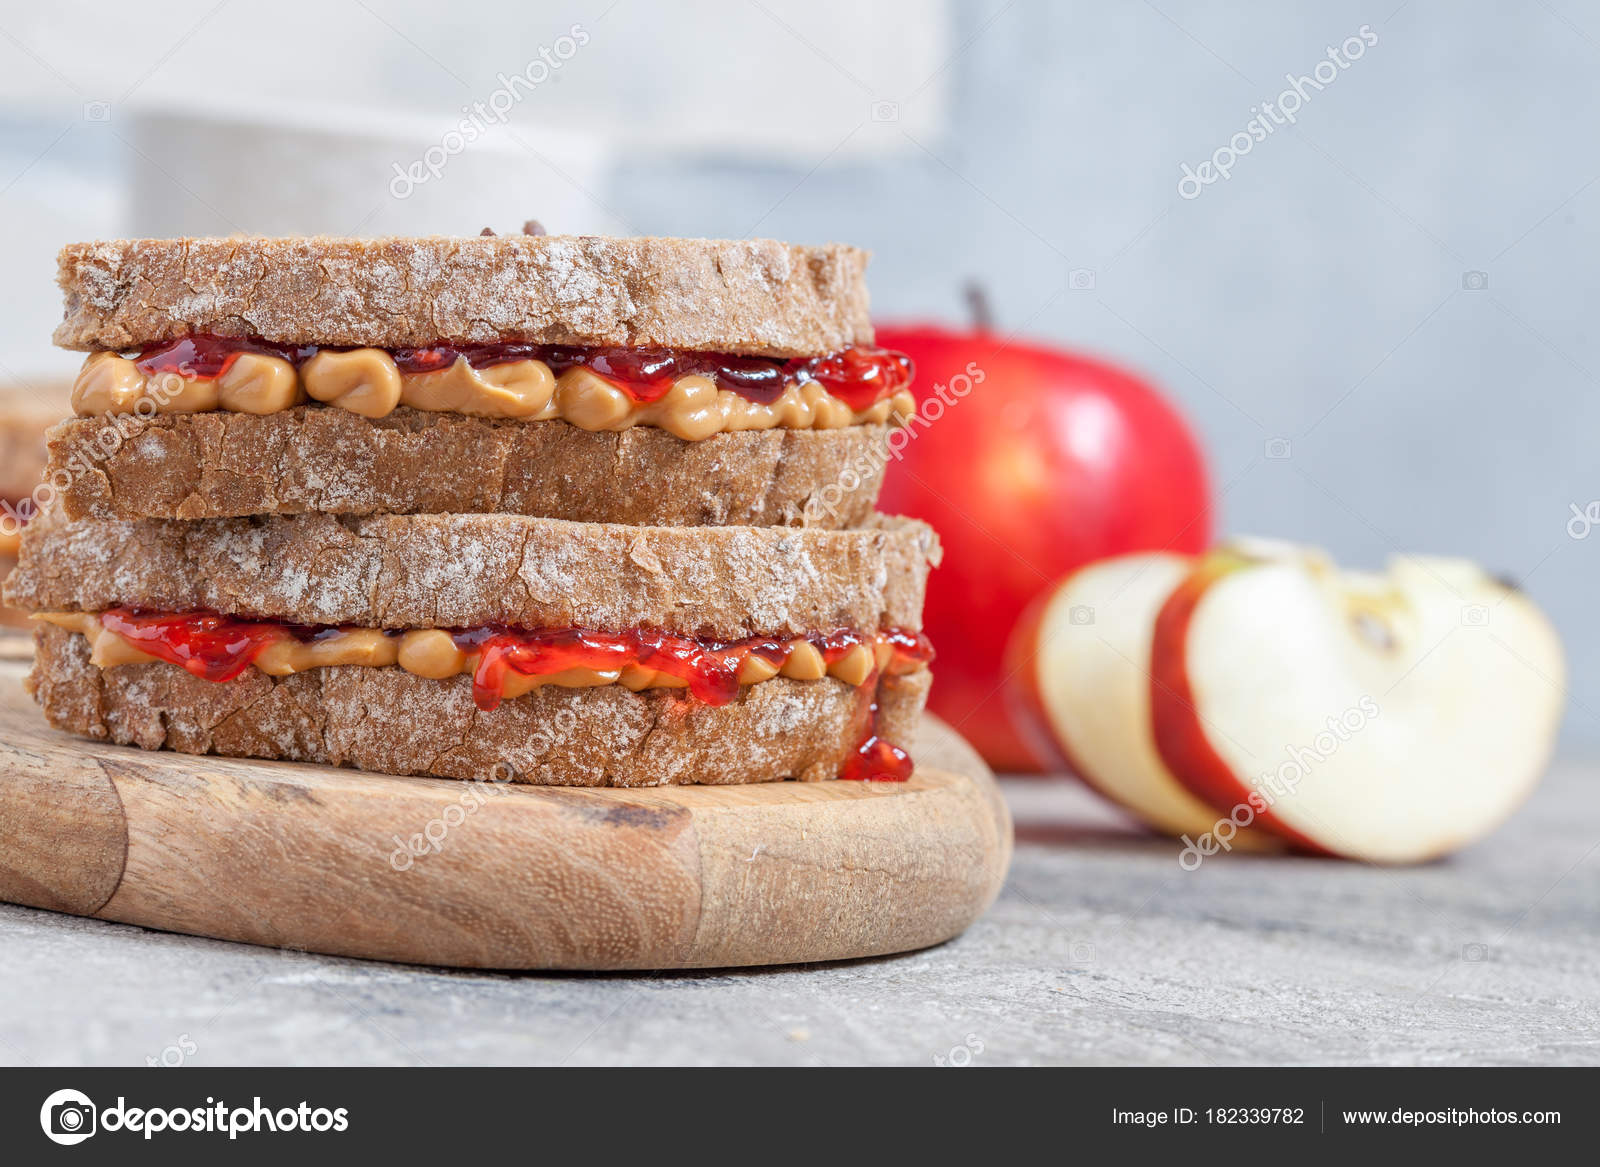 Sandwich de mantequilla de maní y mermelada de fresa: fotografía de